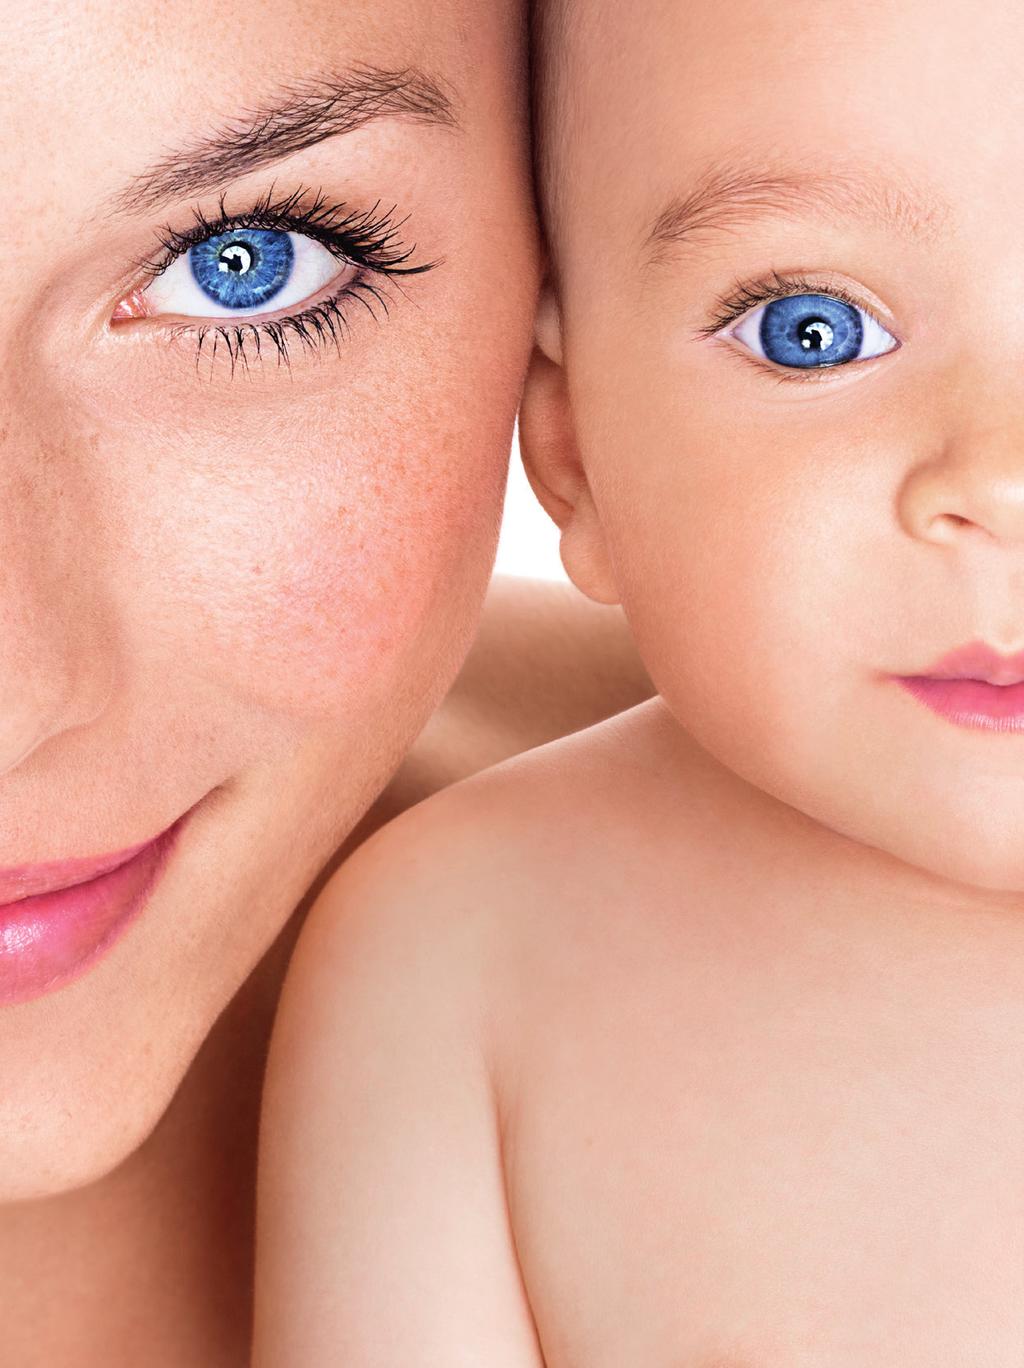 GIB DEINEM BABY MEHR ALS NUR DEINE SCHÖNEN AUGEN. Schon vor der Geburt kannst du die zukünftige Entwicklung deines Babys beeinflussen.